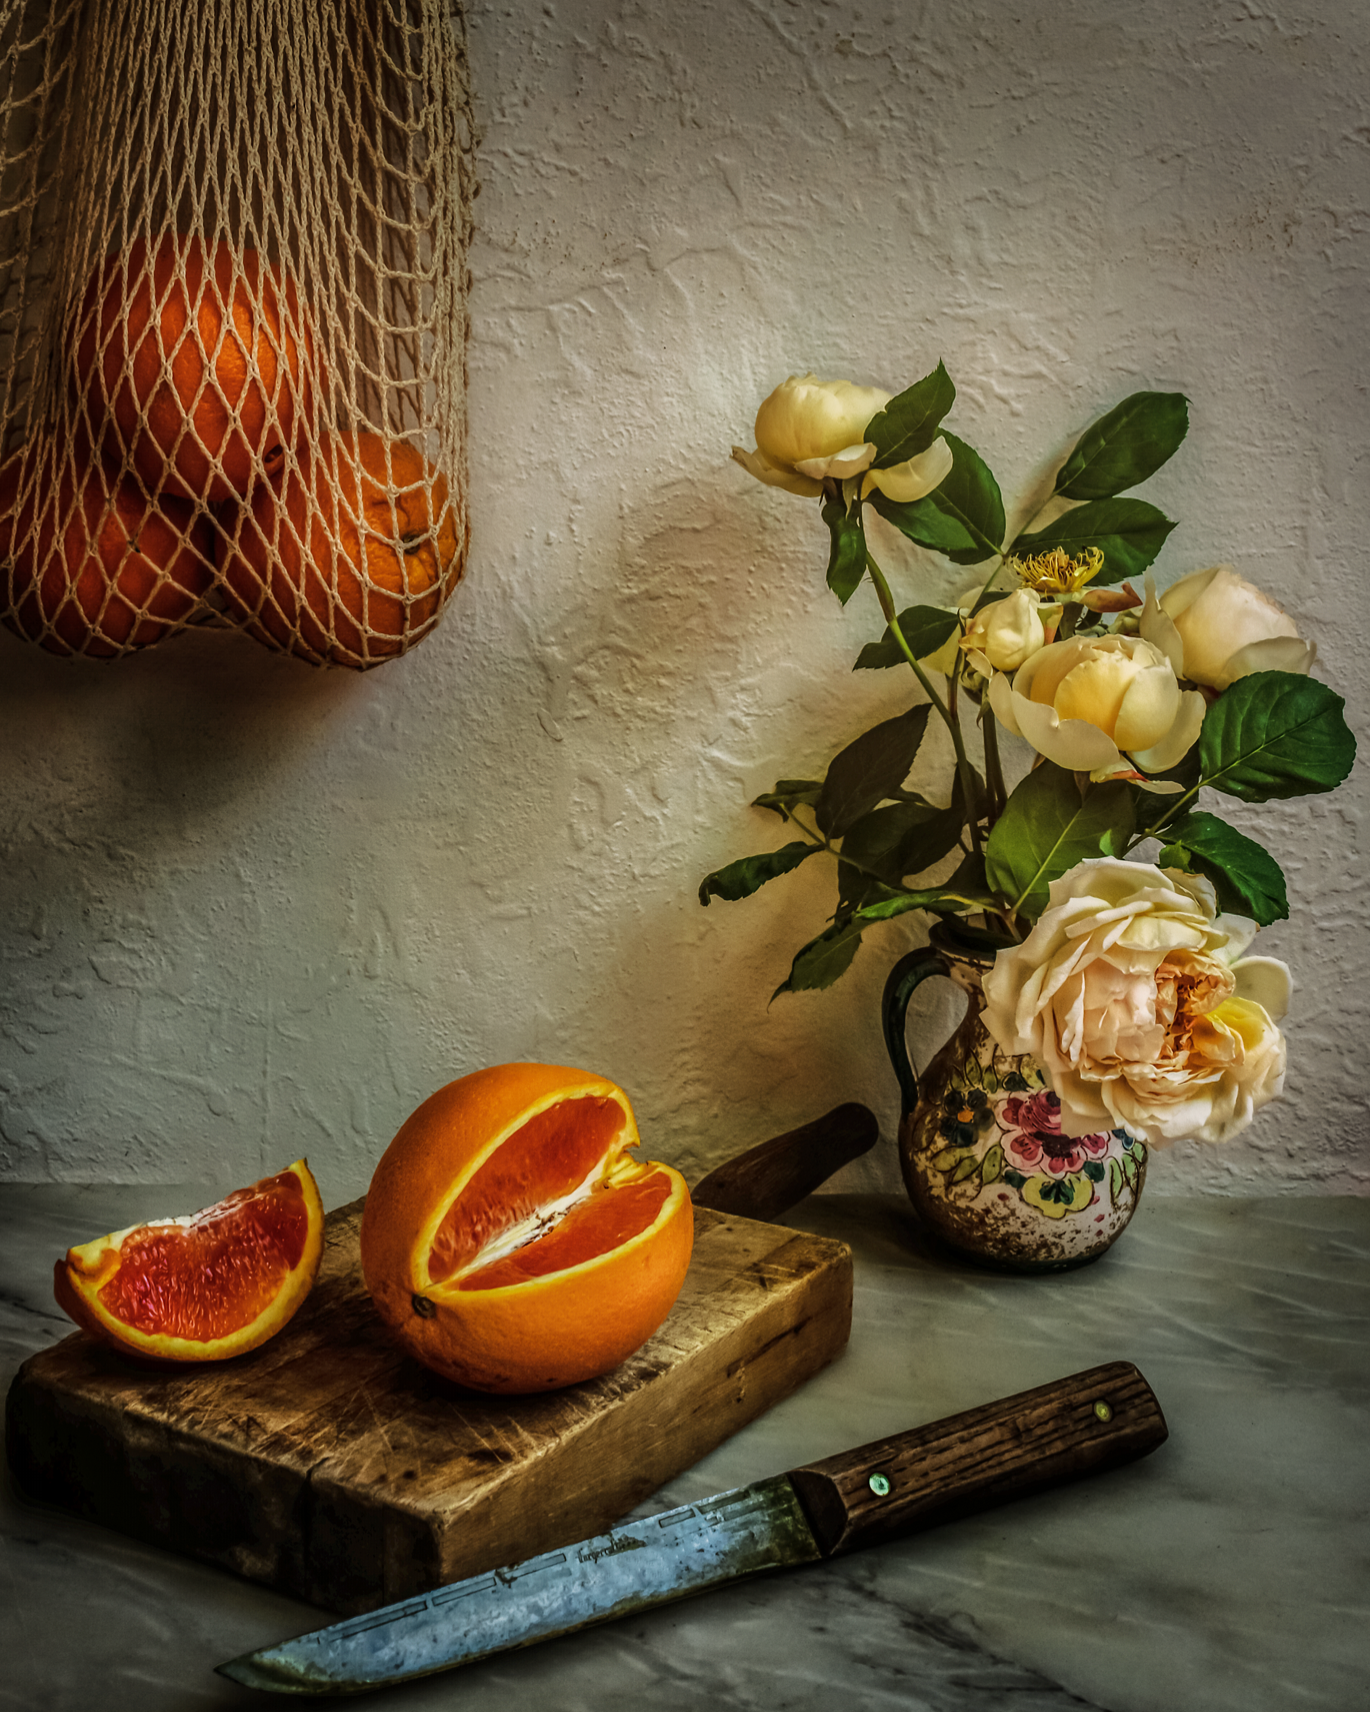 Oranges and roses fqilxf